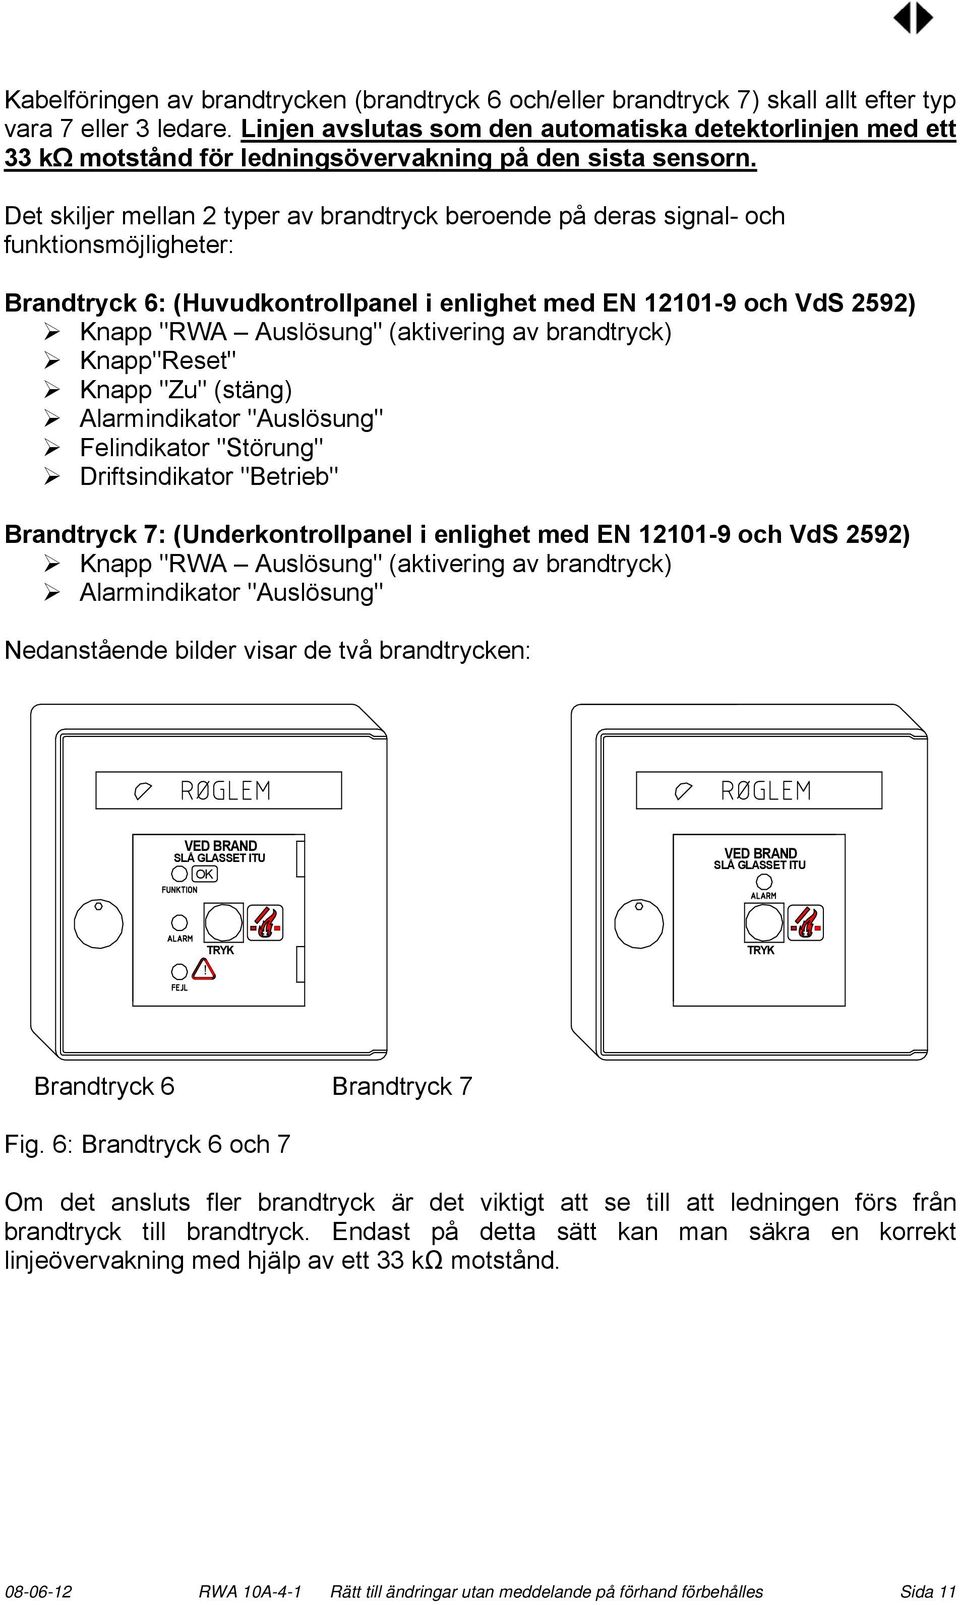 Det skiljer mellan 2 typer av brandtryck beroende på deras signal- och funktionsmöjligheter: Brandtryck 6: (Huvudkontrollpanel i enlighet med EN 12101-9 och VdS 2592) Knapp "RWA Auslösung"